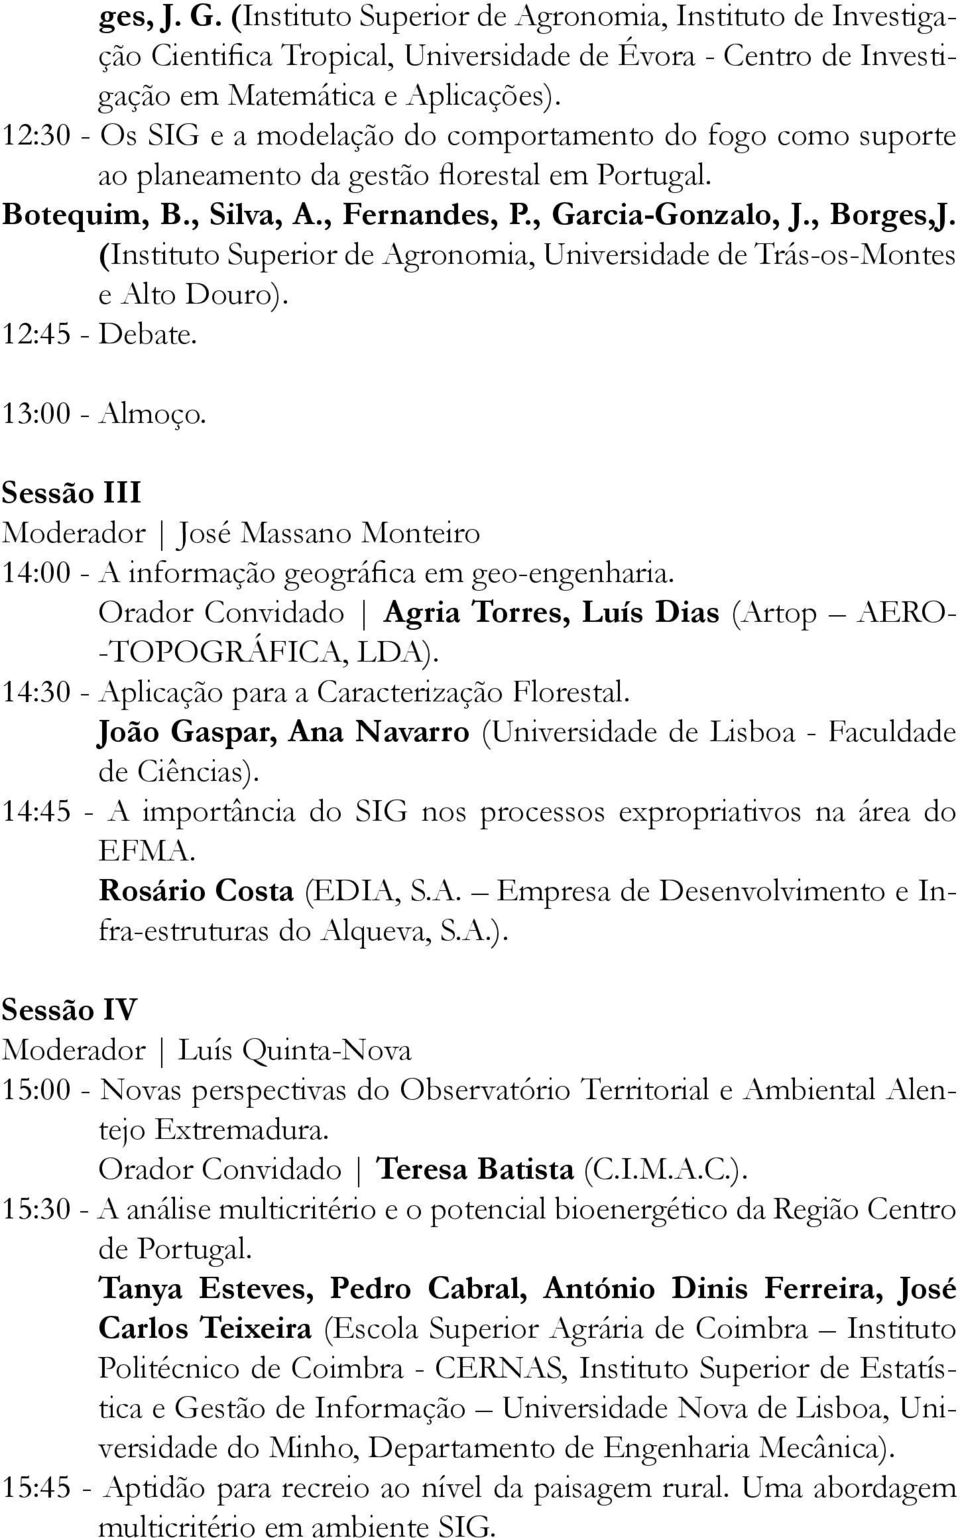 (Instituto Superior de Agronomia, Universidade de Trás-os-Montes e Alto Douro). 12:45 - Debate. 13:00 - Almoço.